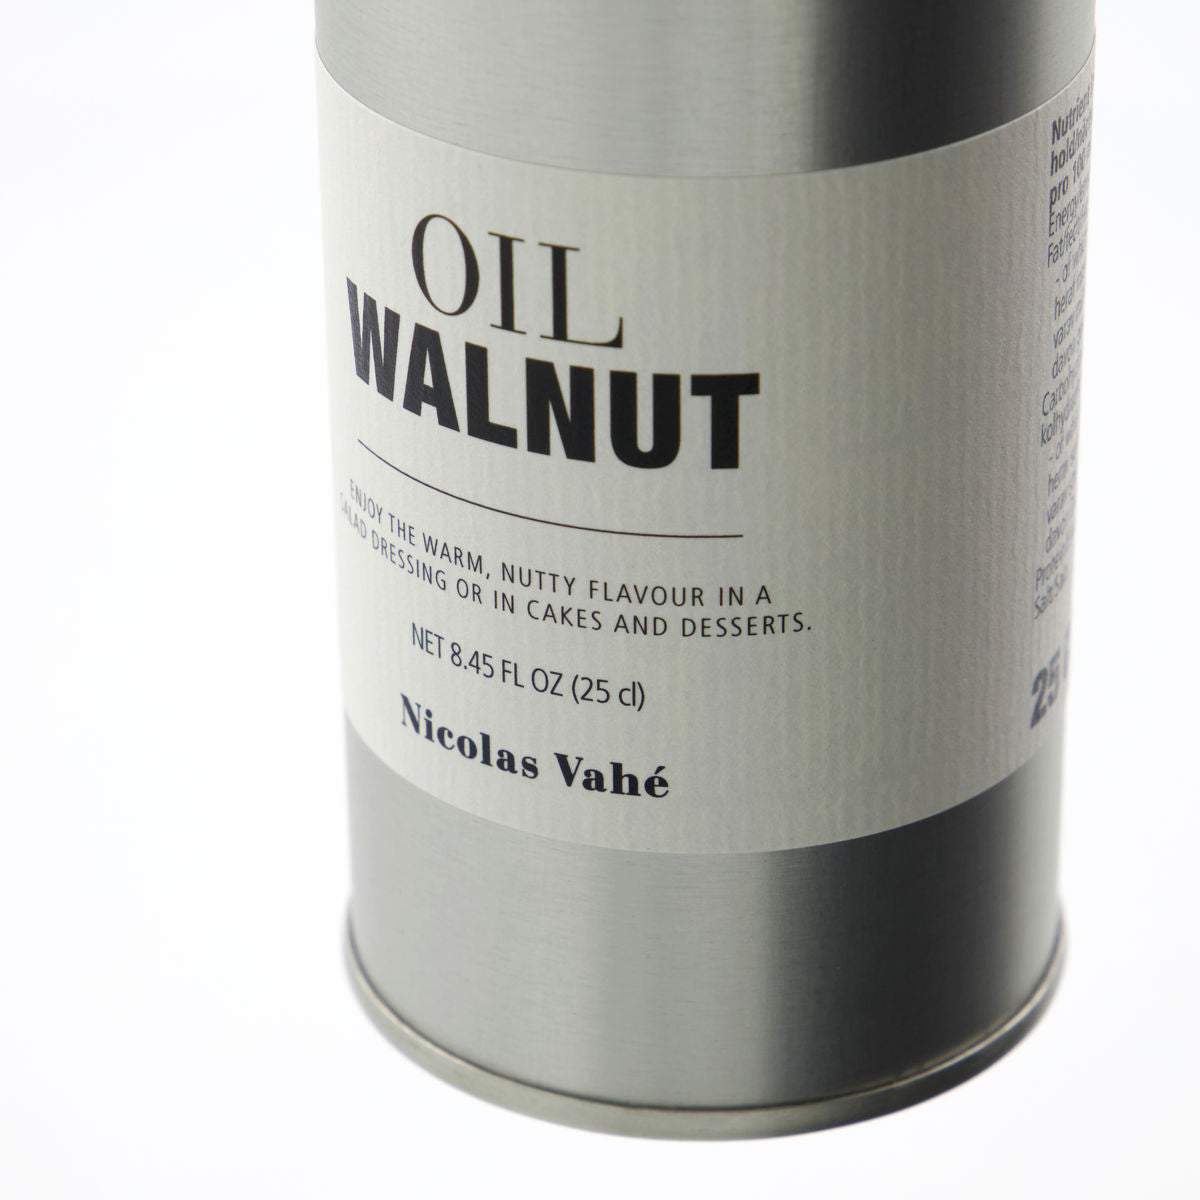 Walnuss Öl